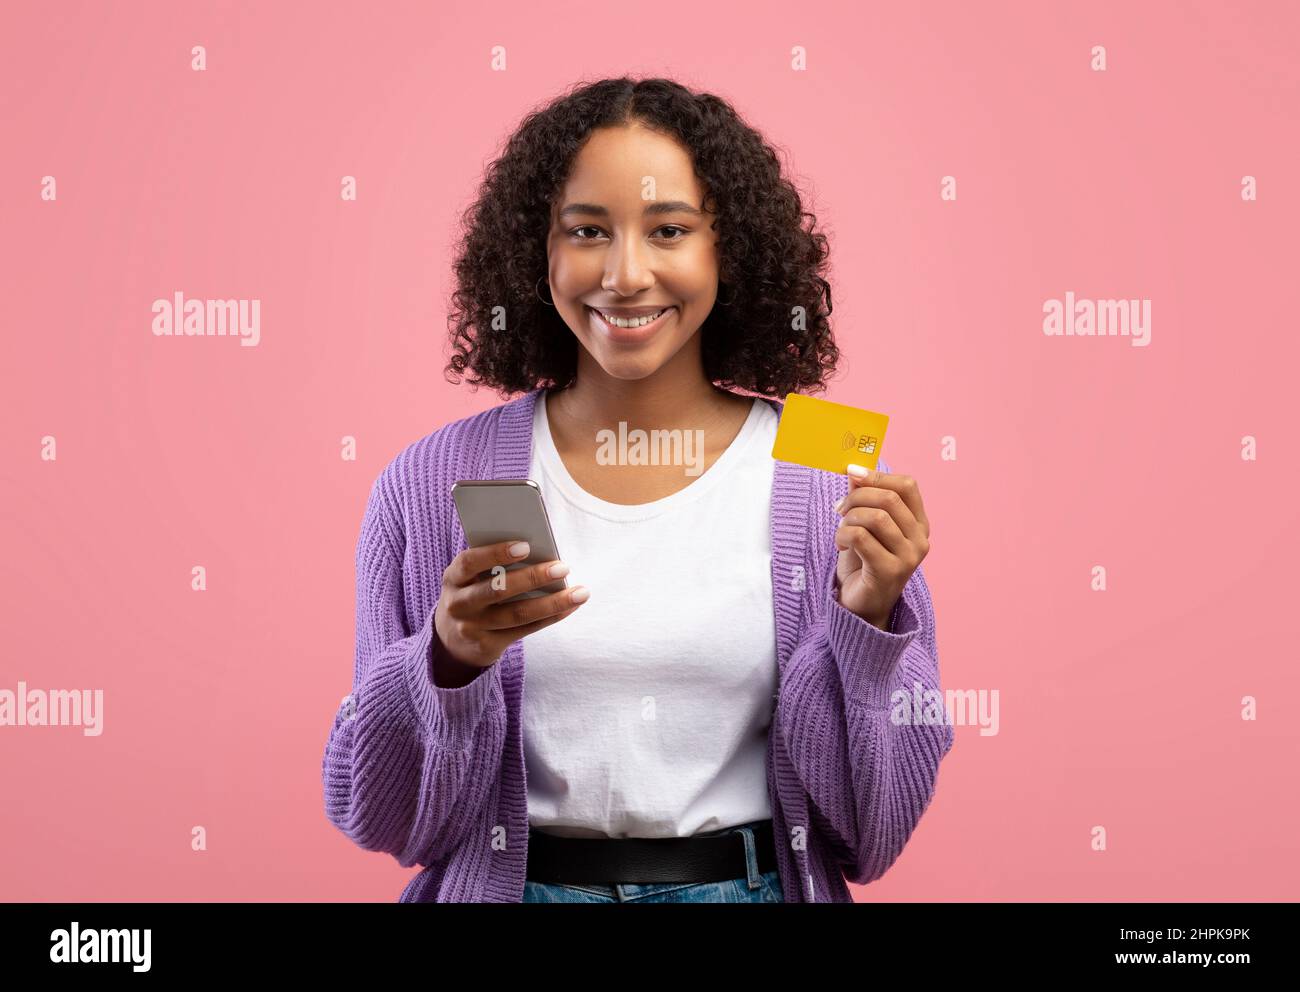 Application d'achat en ligne. Jeune femme afro-américaine souriante utilisant un téléphone portable et une carte de crédit, achetant dans un magasin web Banque D'Images